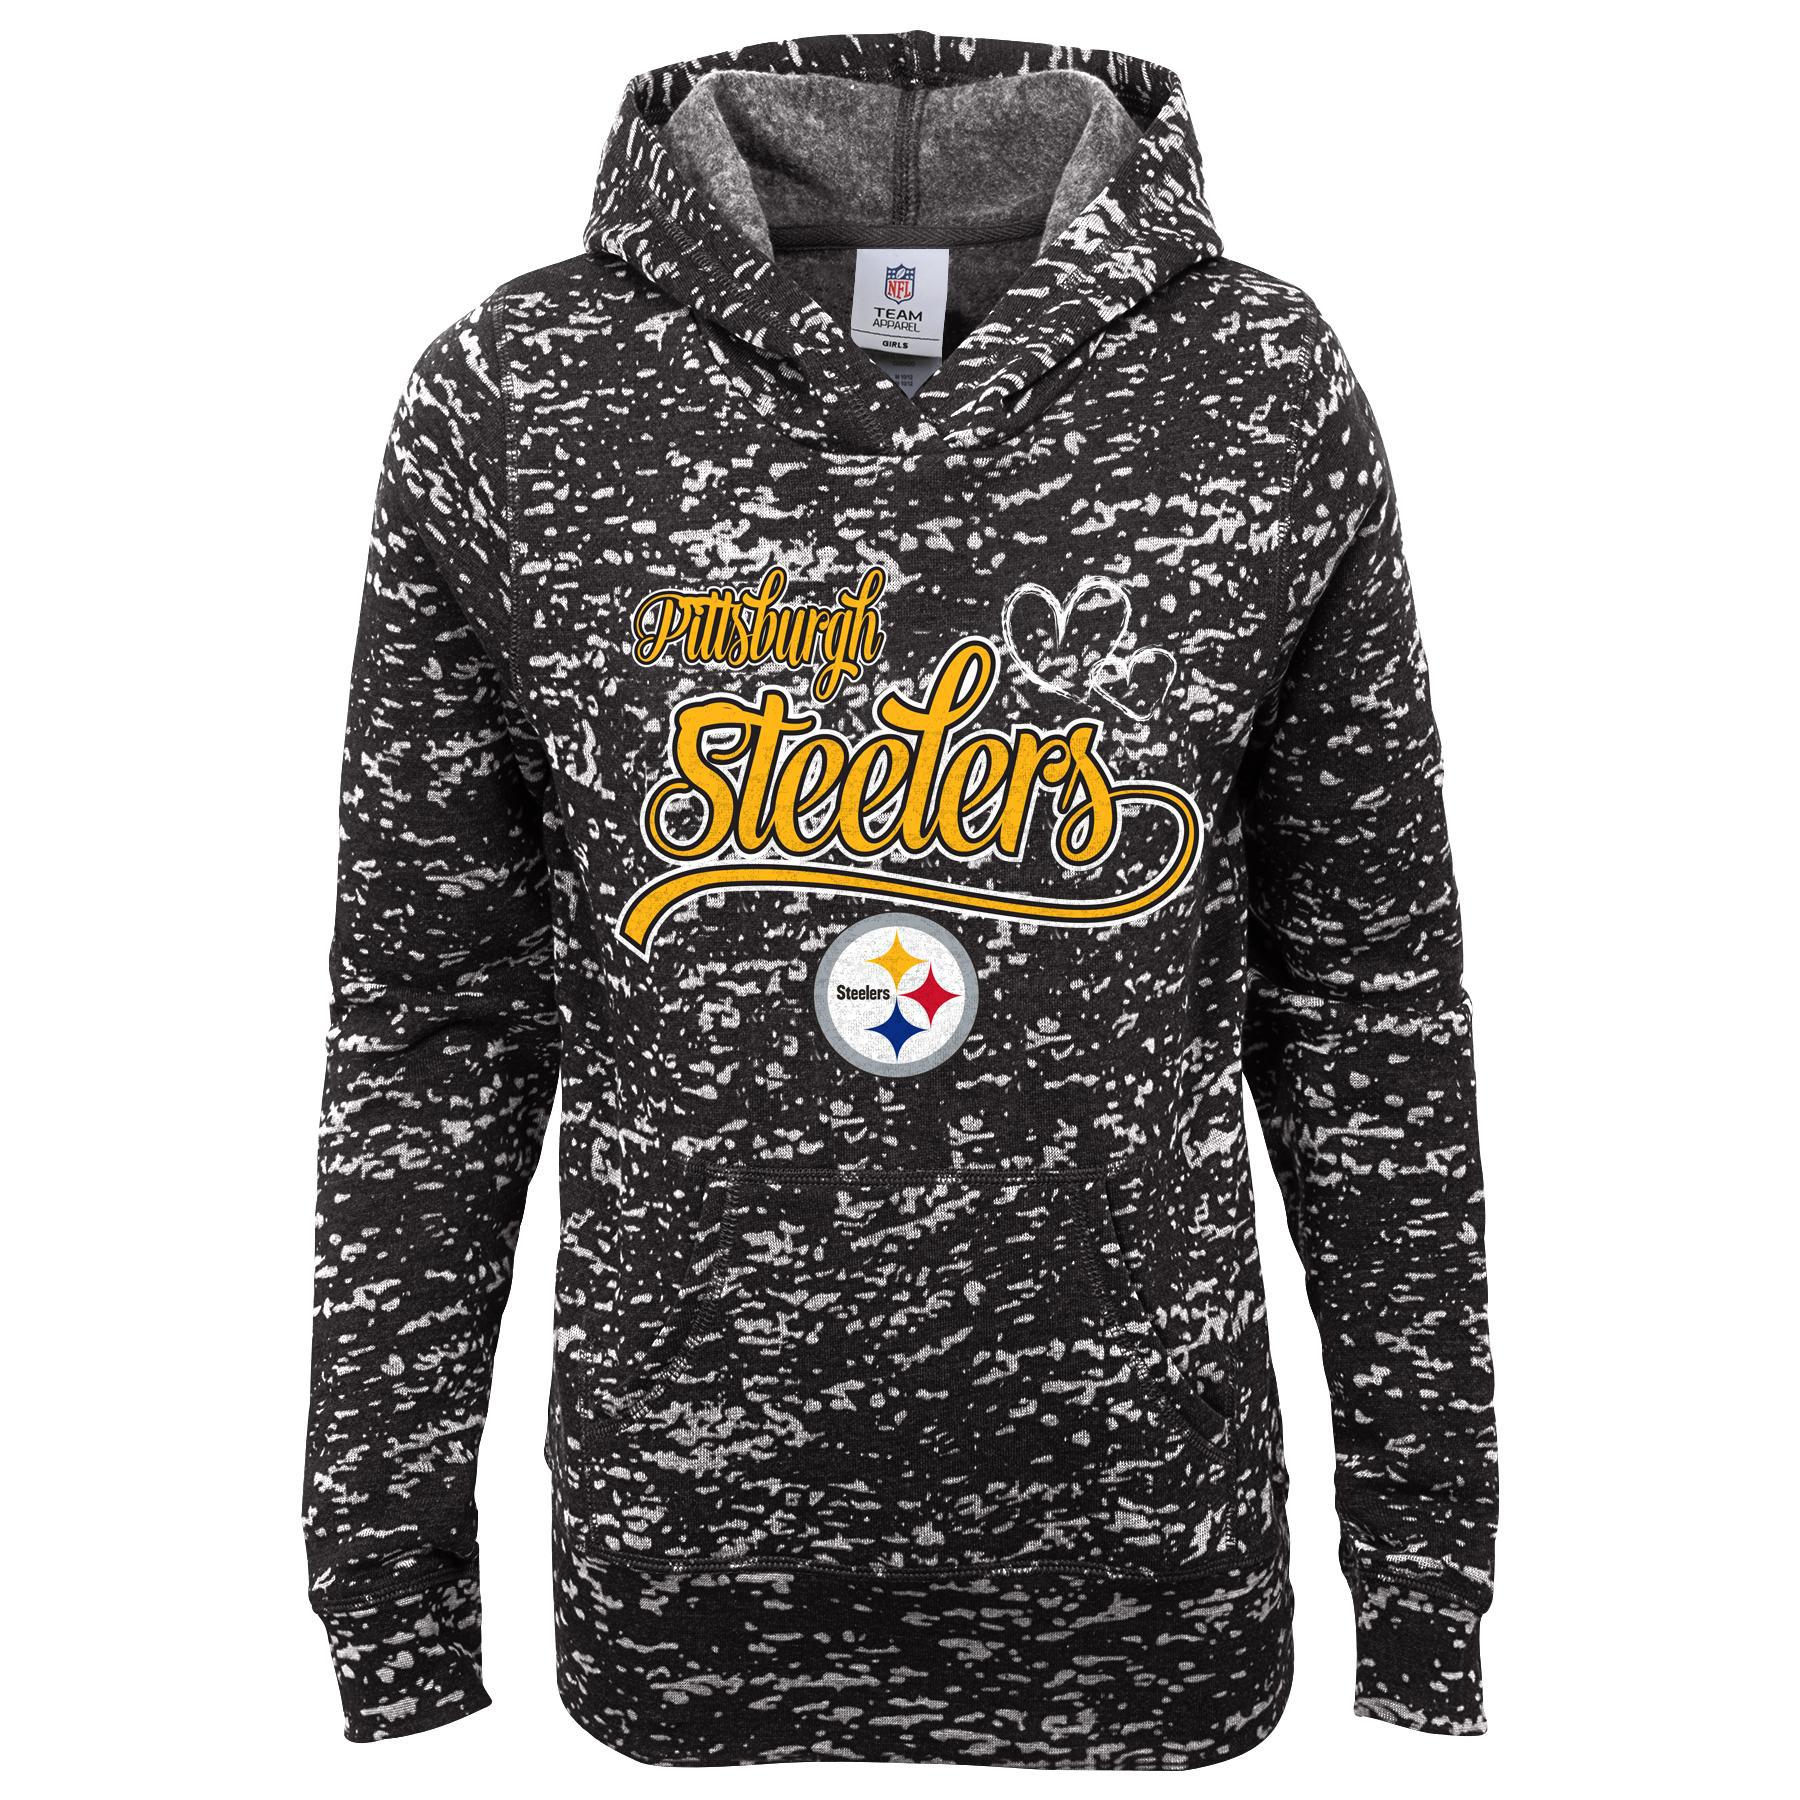 NFL Girls' Graphic Hoodie - Pittsburgh Steelers